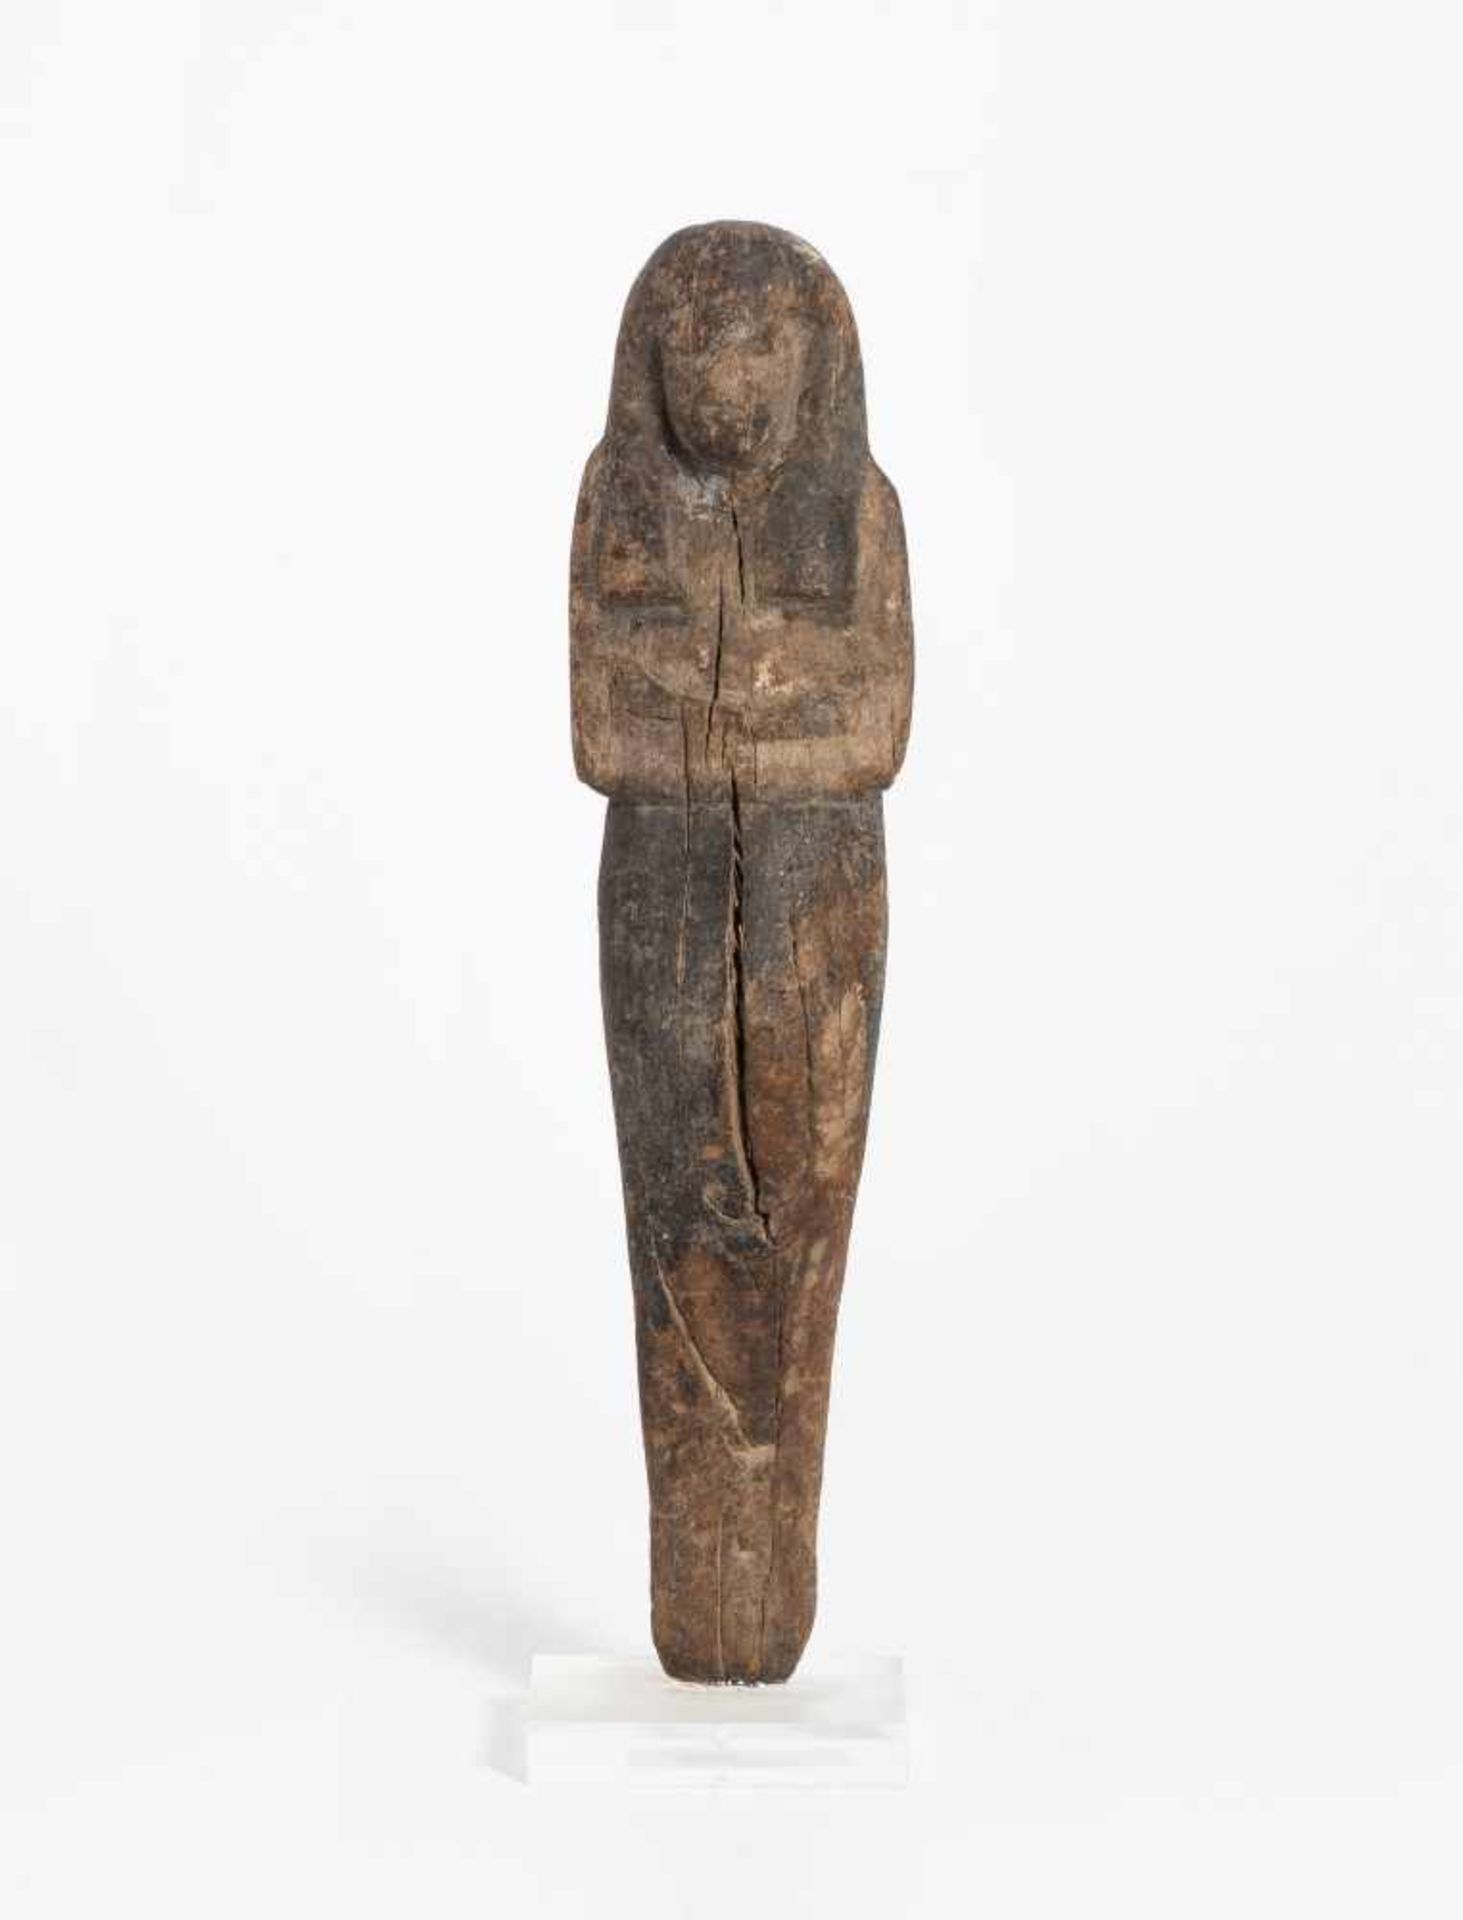 UschebtiAegypten, Neues Reich, 19.–20. Dynastie. Holz mit Resten von Bitumenüberzug. Uschebti in